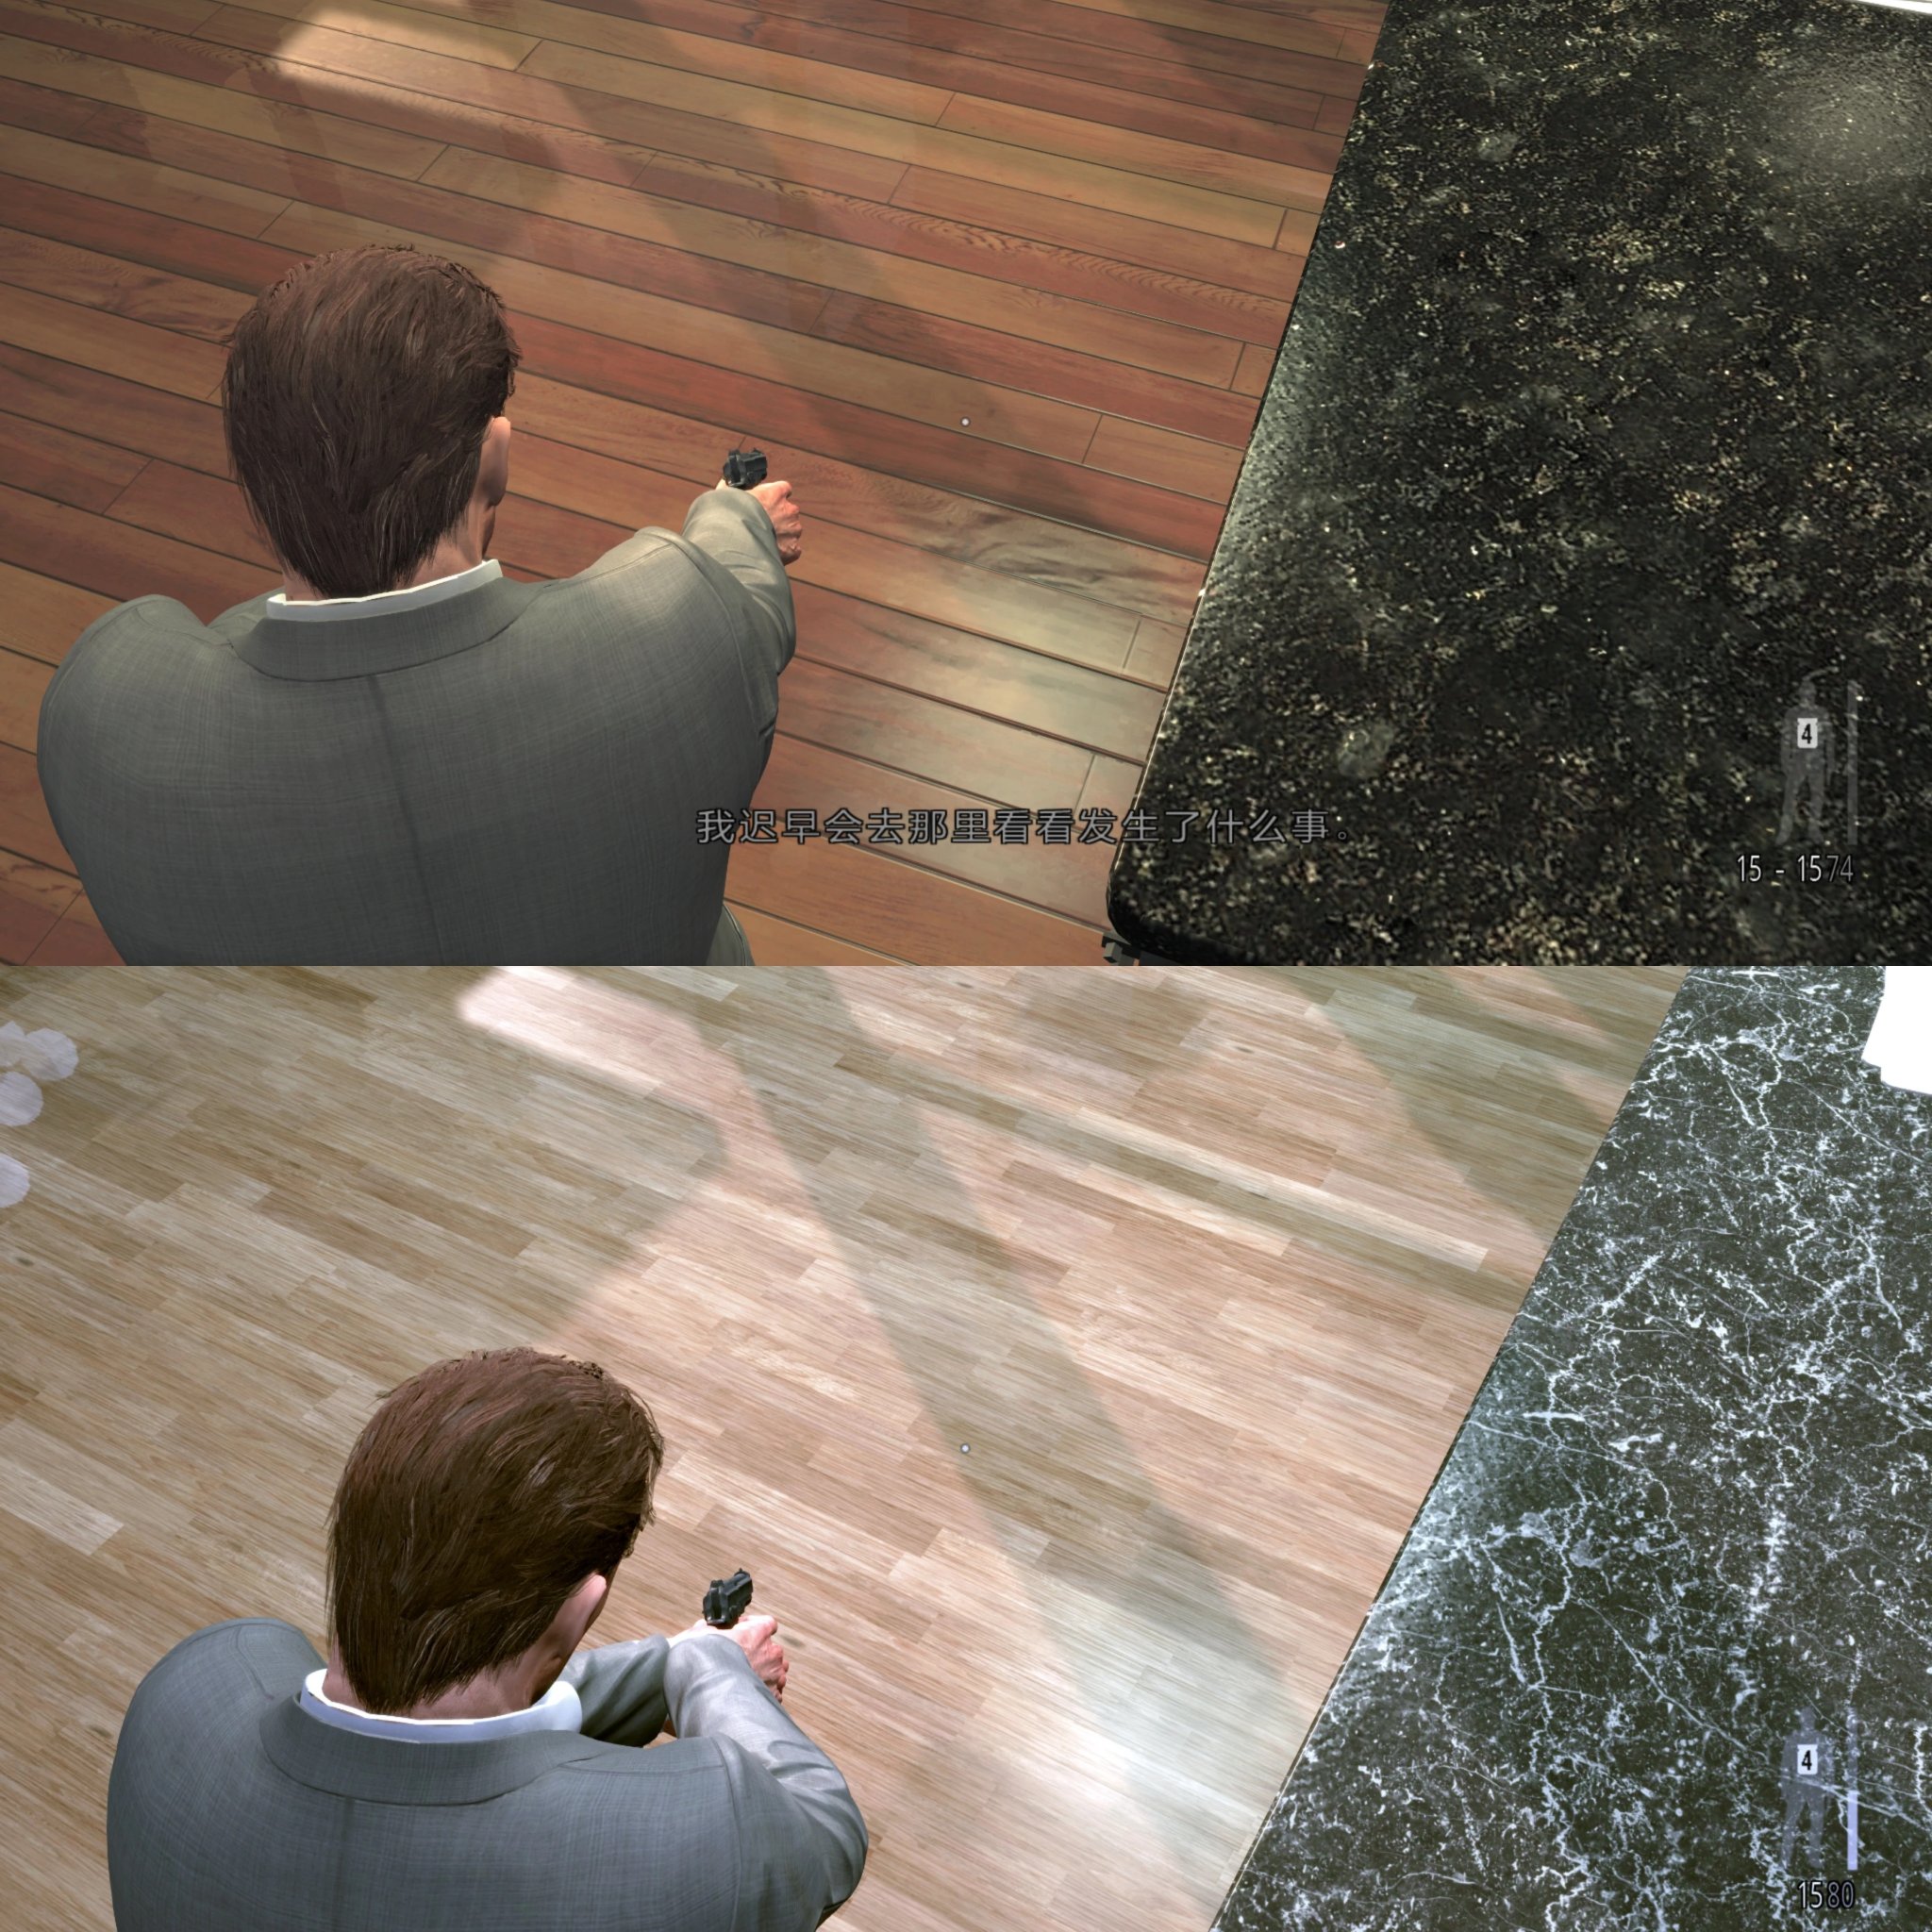 Max Payne 3 только что получил обязательный пакет HD-текстур объемом 12 ГБ